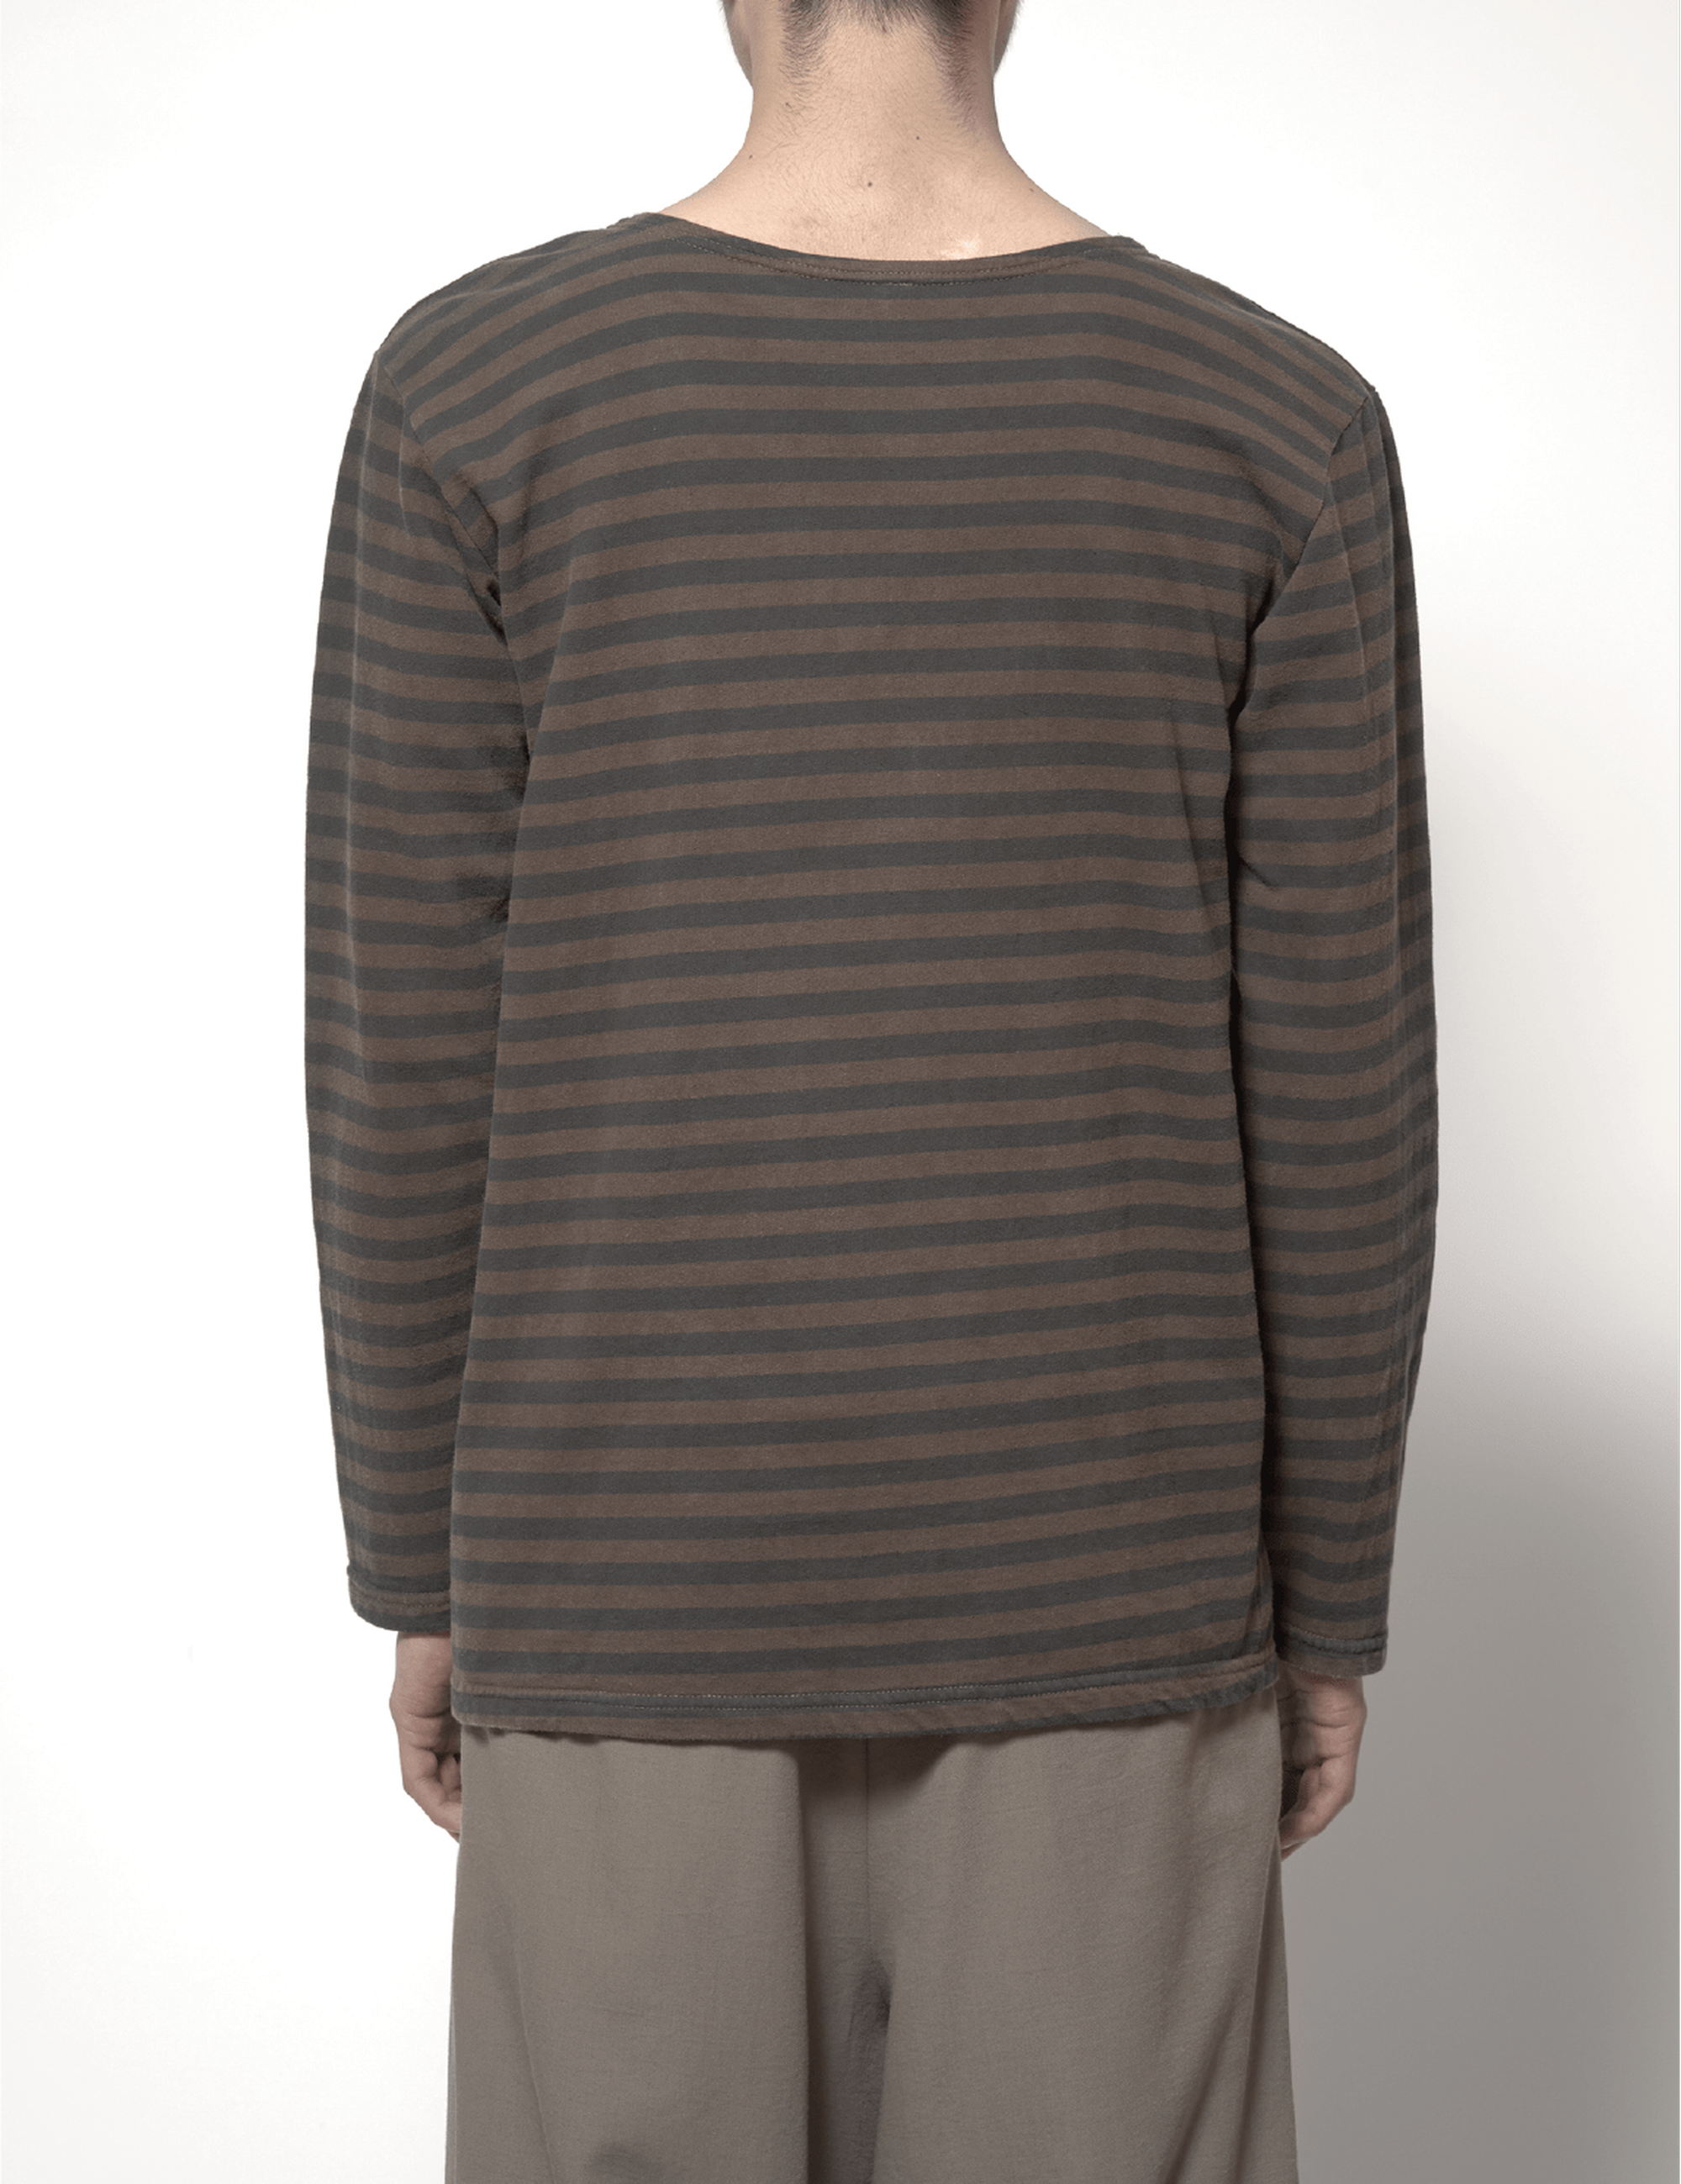 Military Long-Sleeve T-shirt Amami-Oshima's mudding